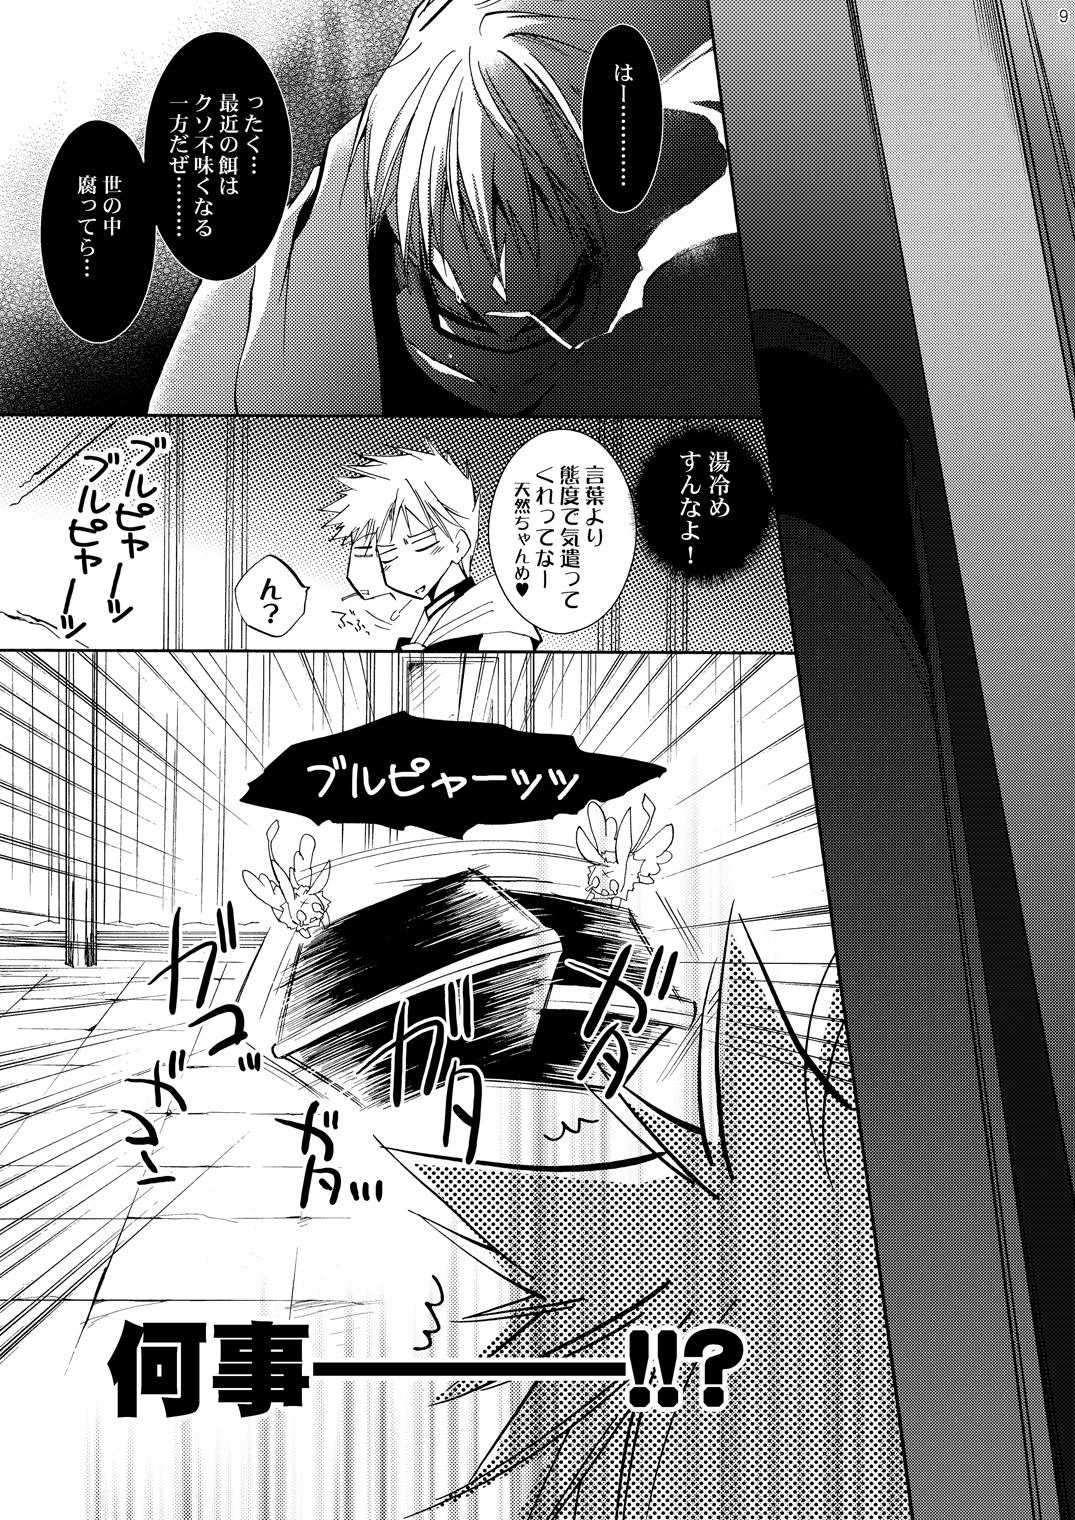 Buttfucking Hananemu no itsu waga mune ni kimi nemuru - 07-ghost Swinger - Page 8